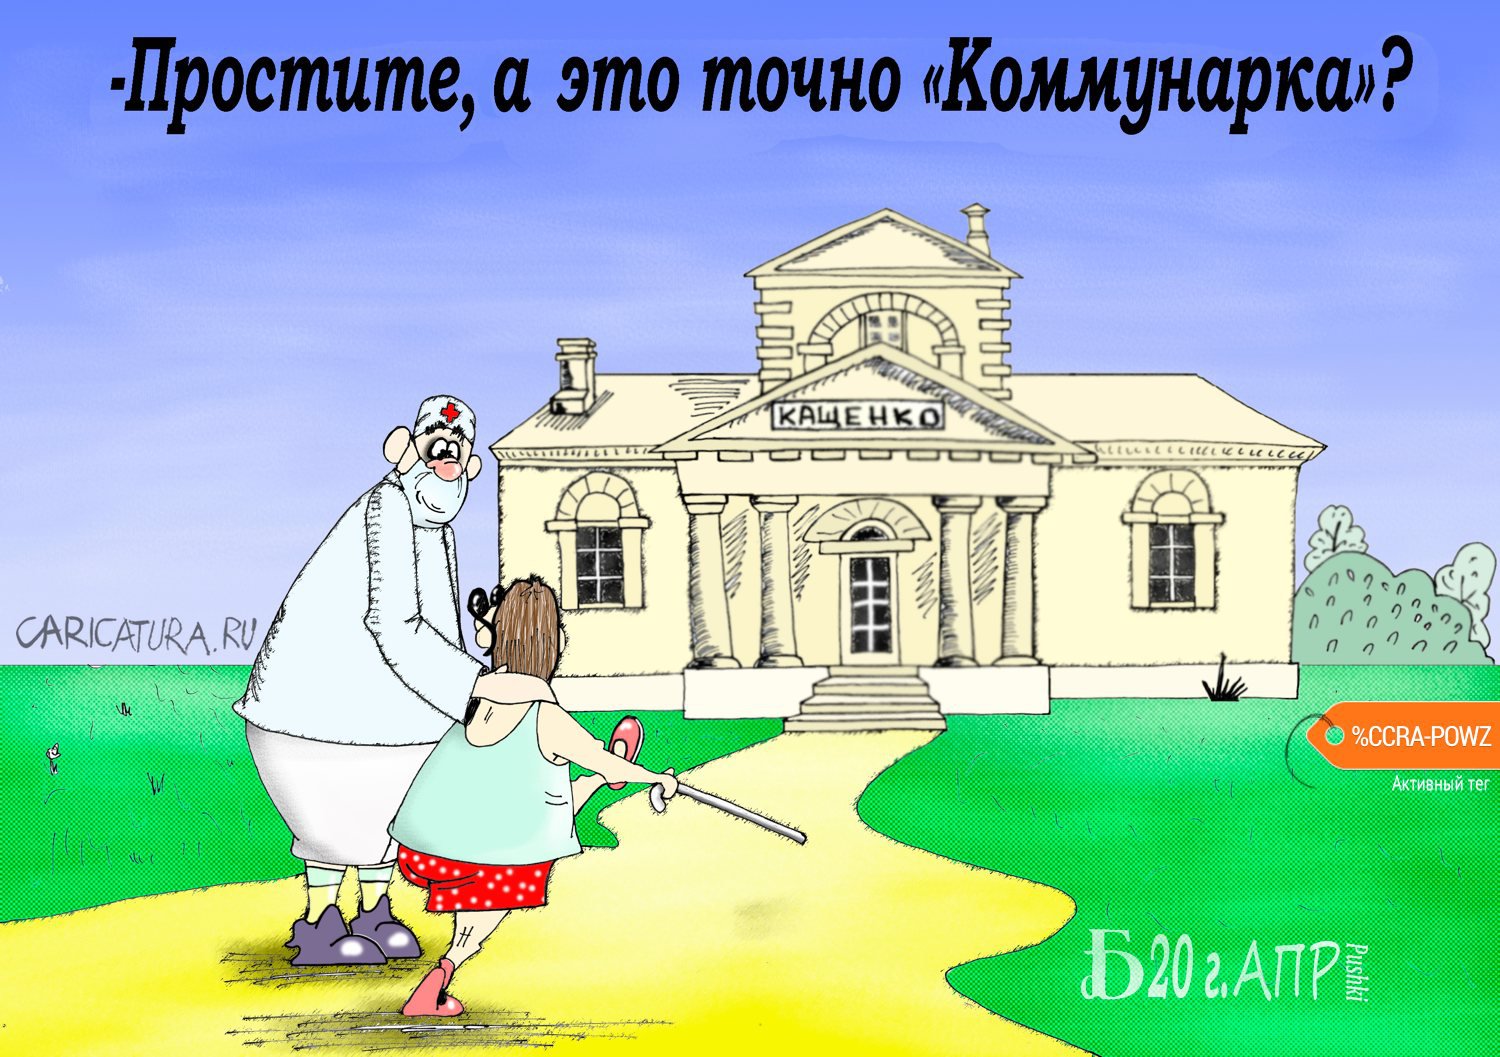 Карикатура "Про большого брата", Борис Демин